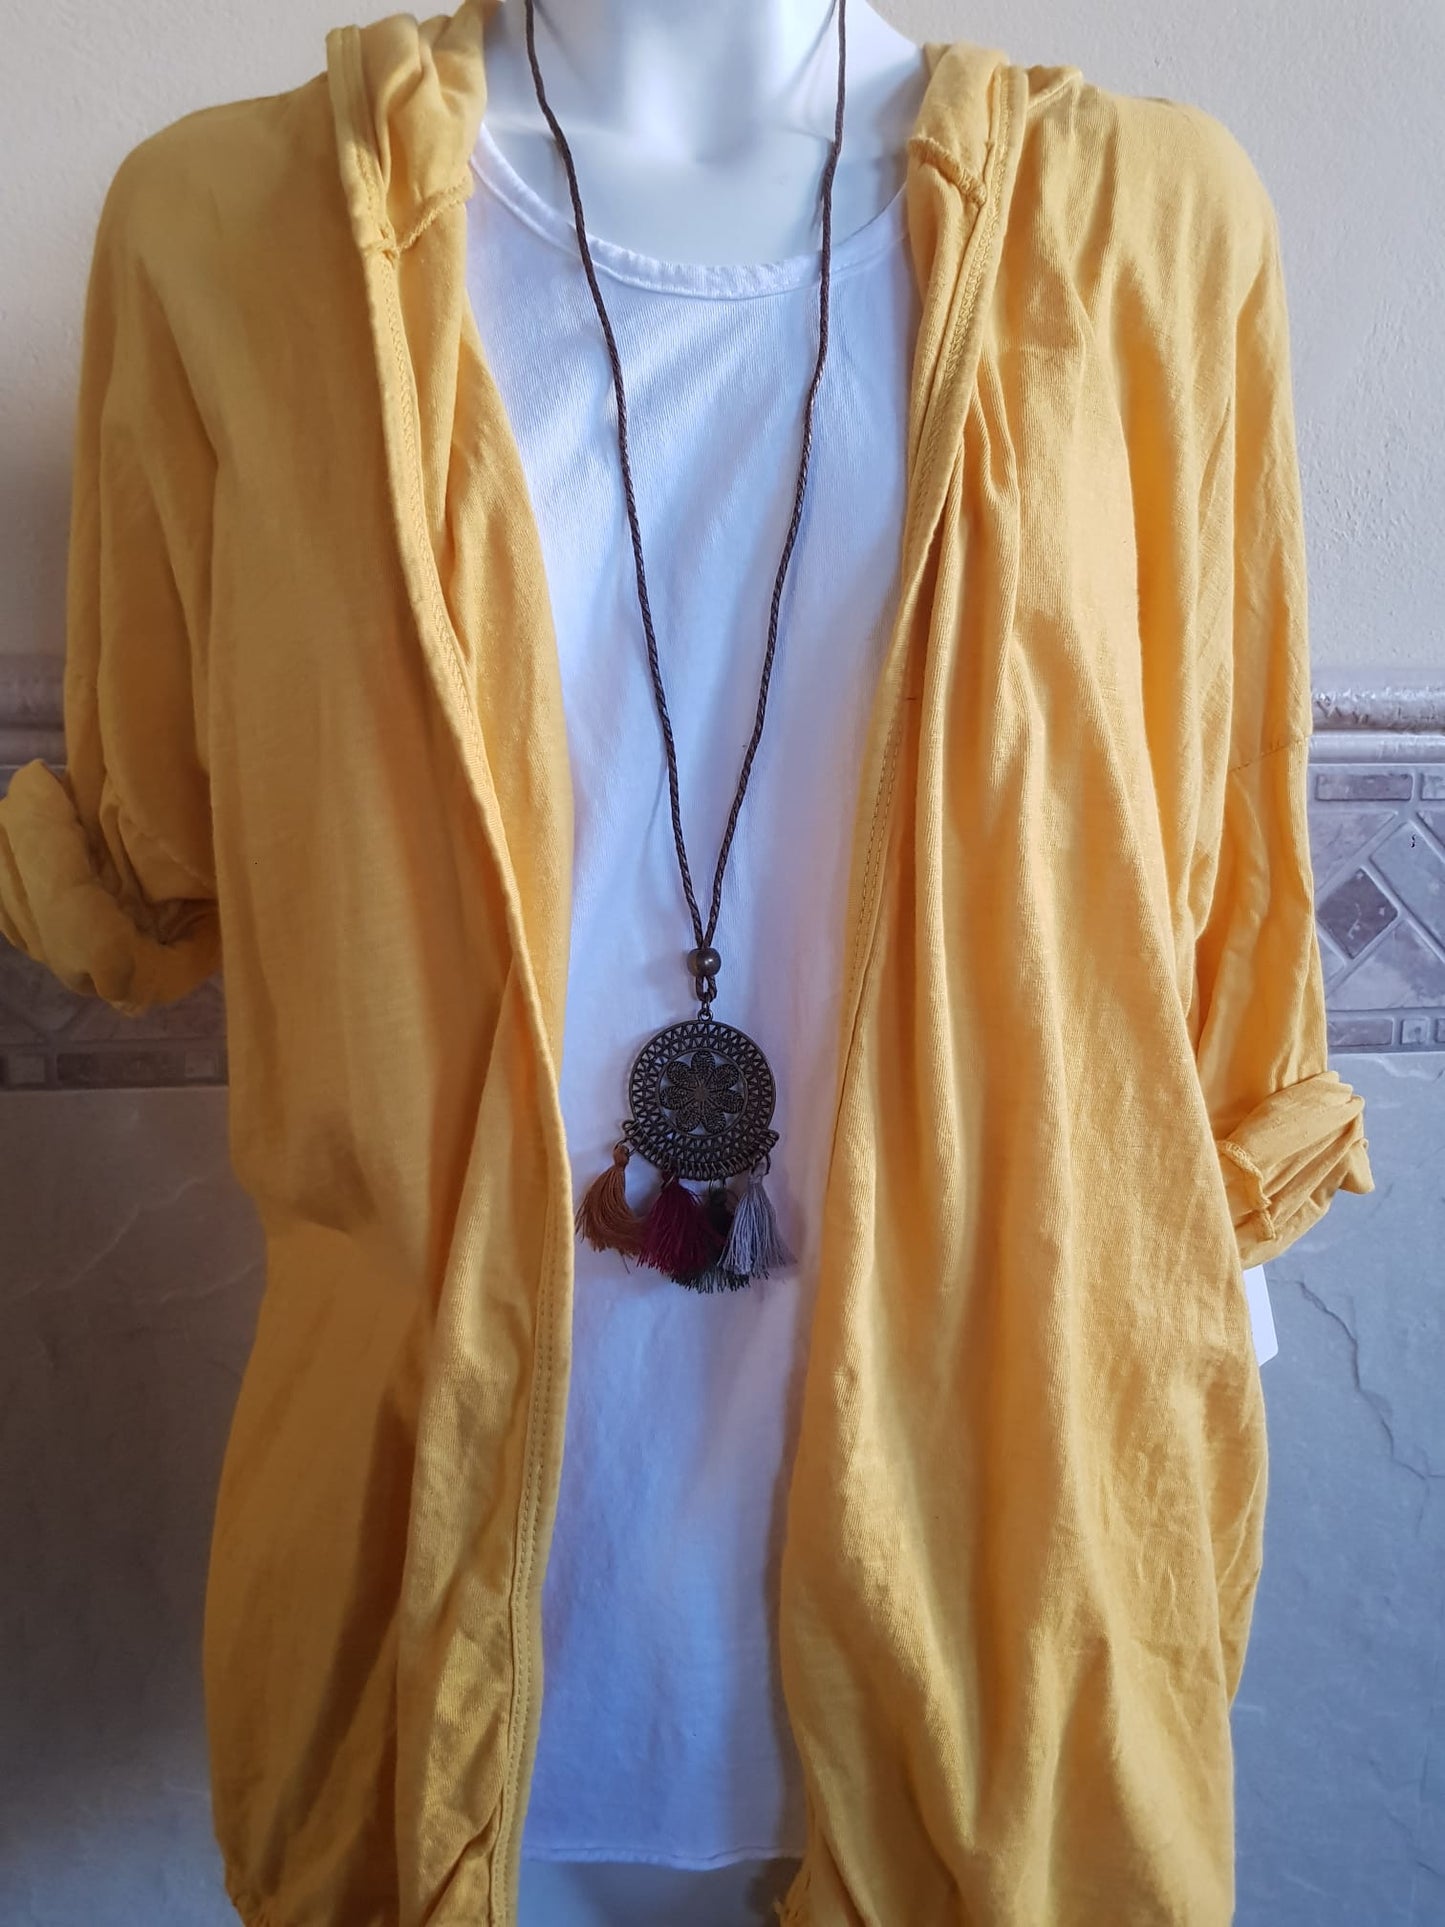 Chaqueta Algodón con Capucha, Camiseta y Collar